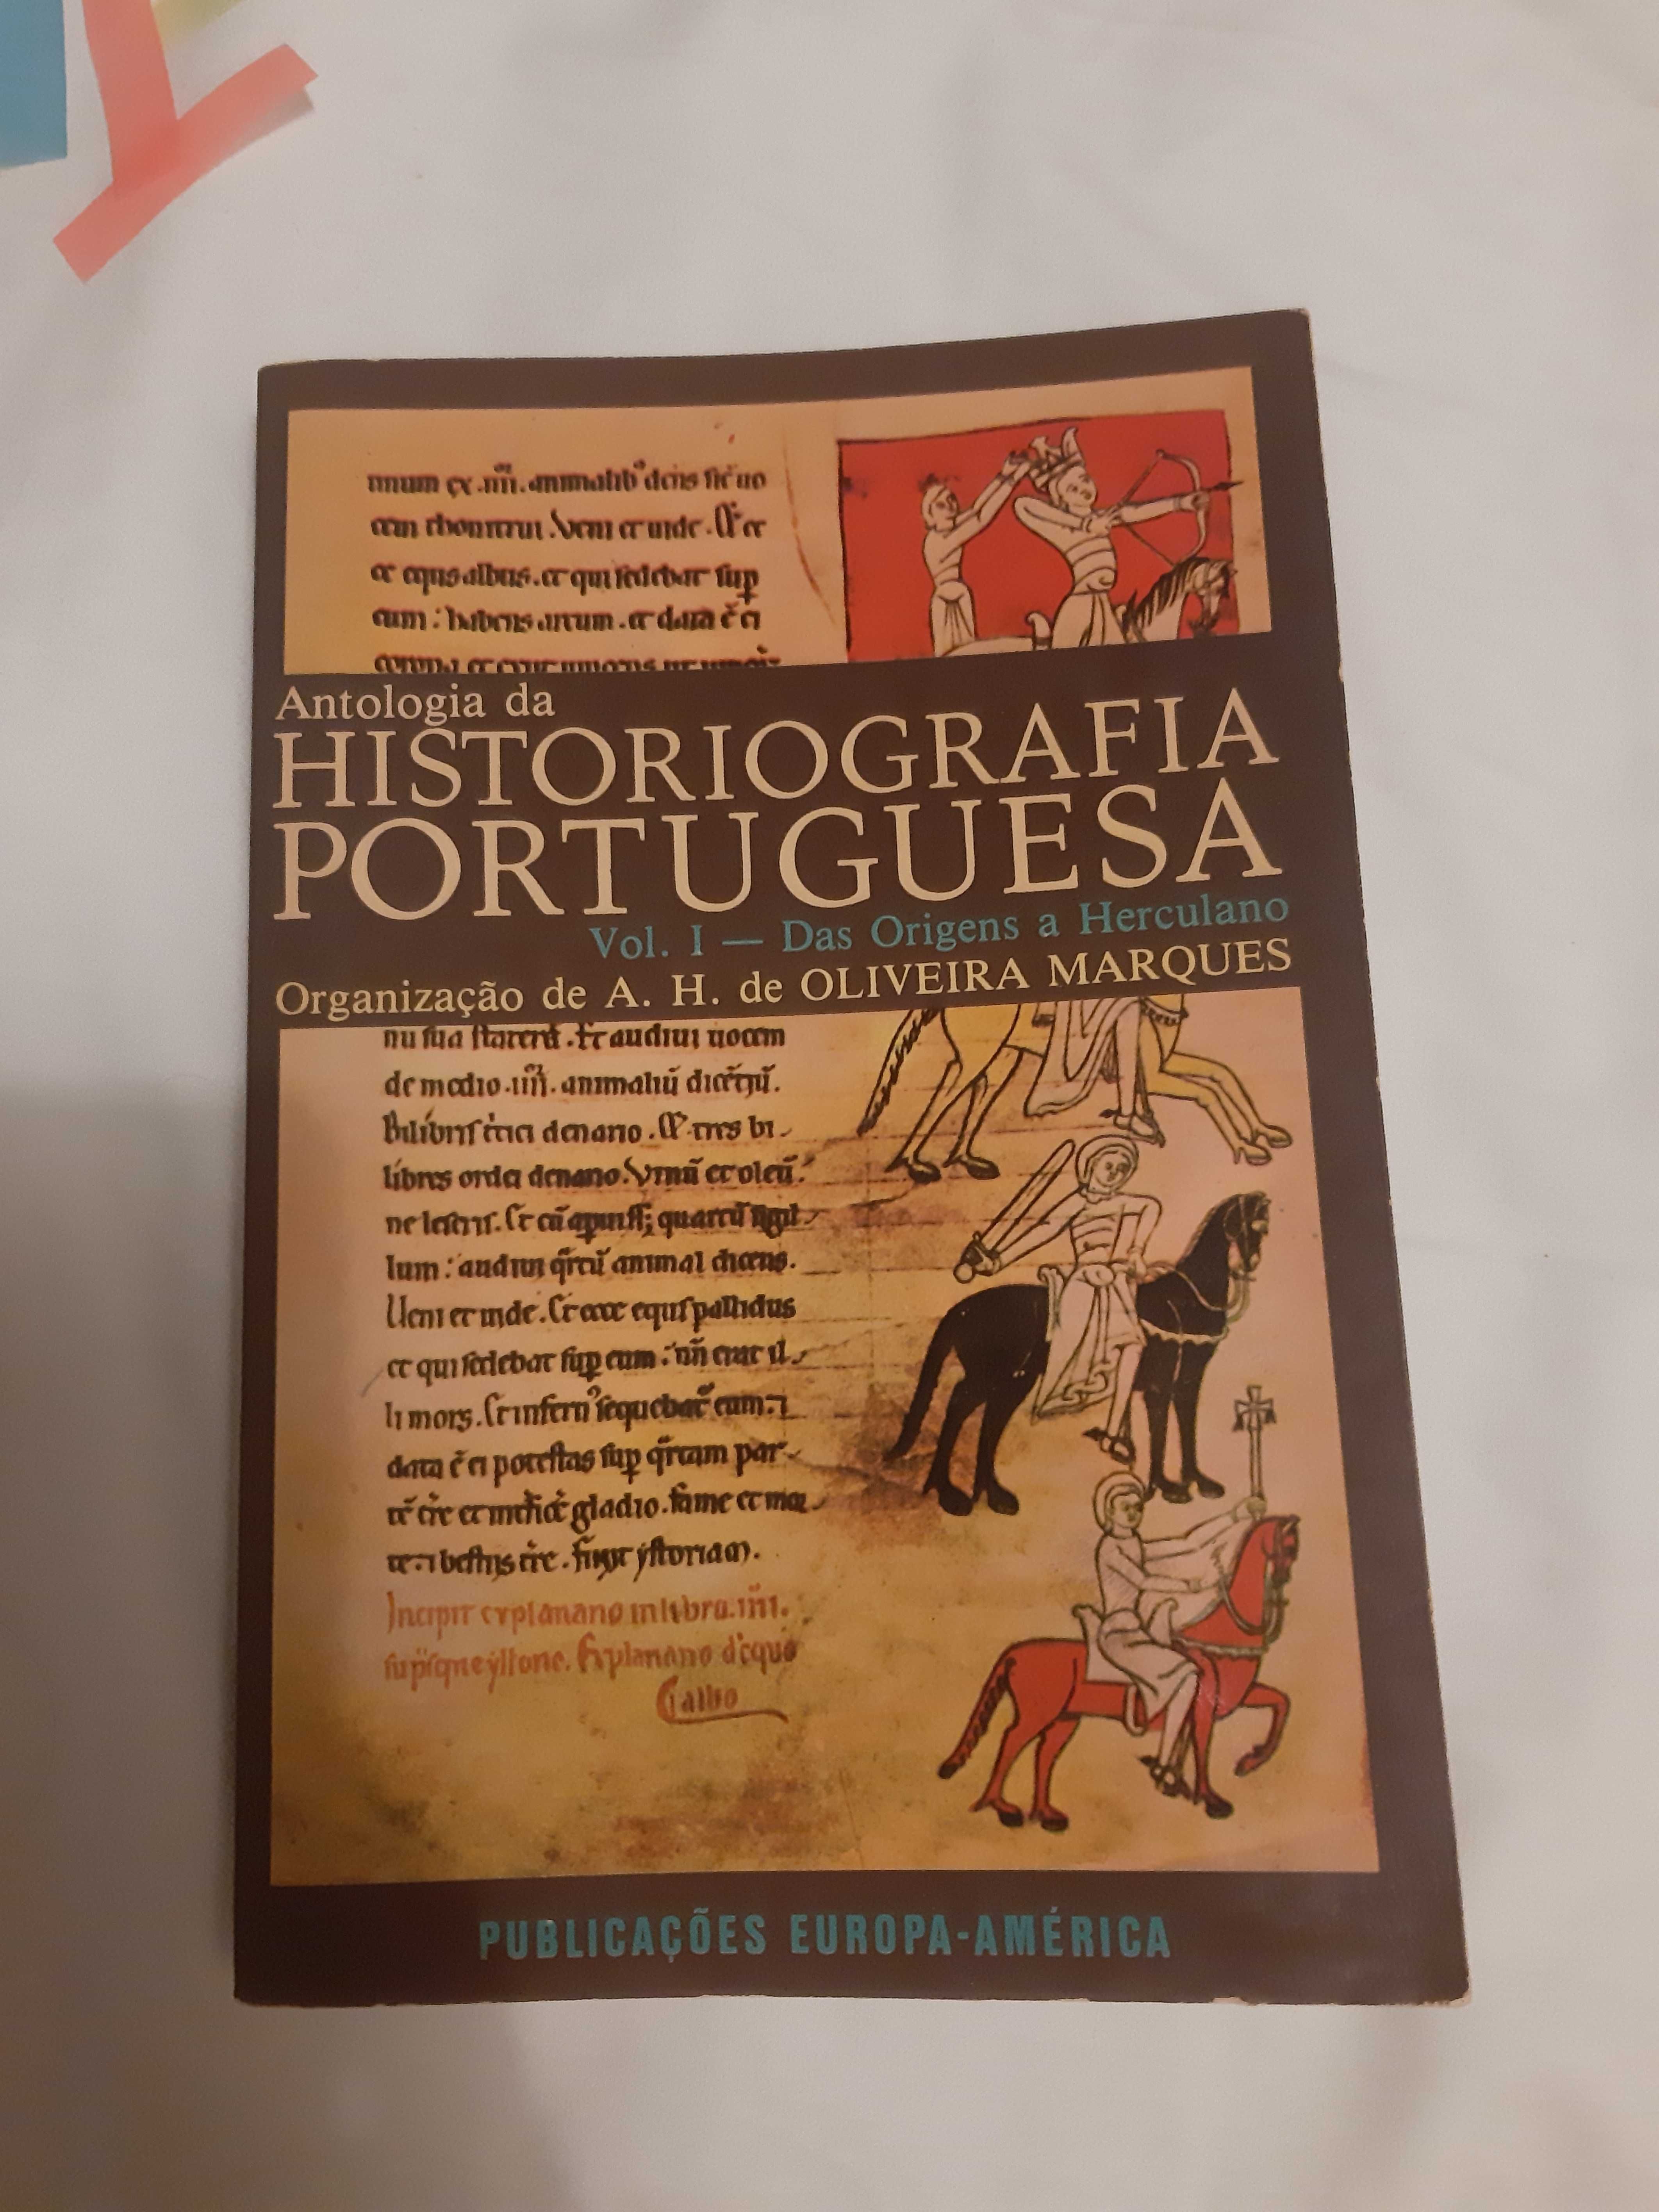 Antologia da Historiografia Portuguesa Vol. 1